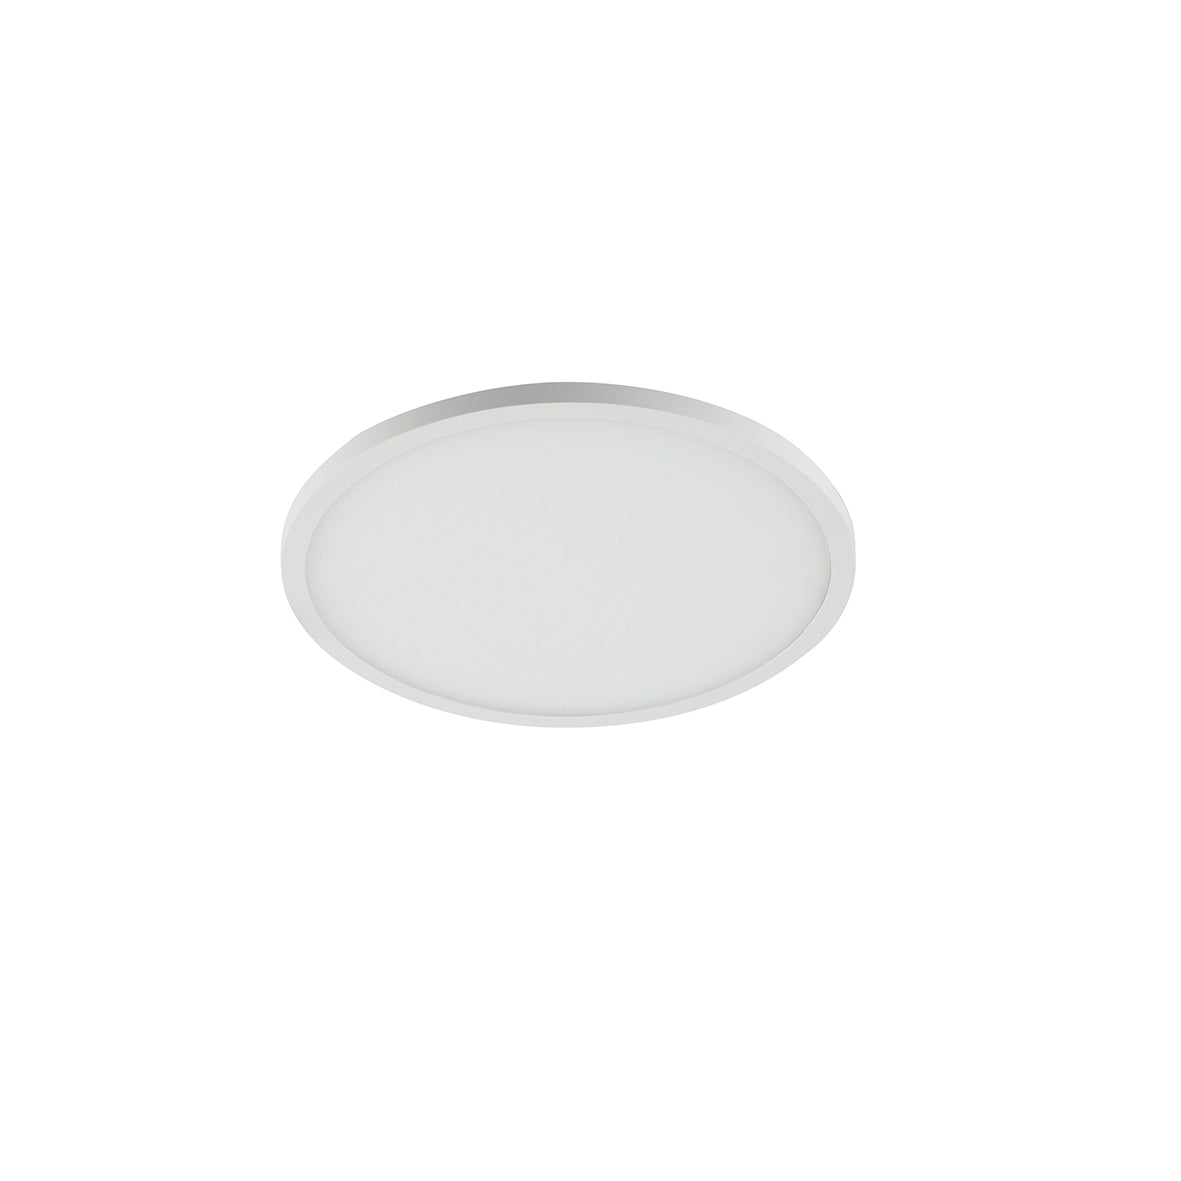 Luminaria empotrable LED PLUS en aluminio blanco mate y borde efecto luz de techo